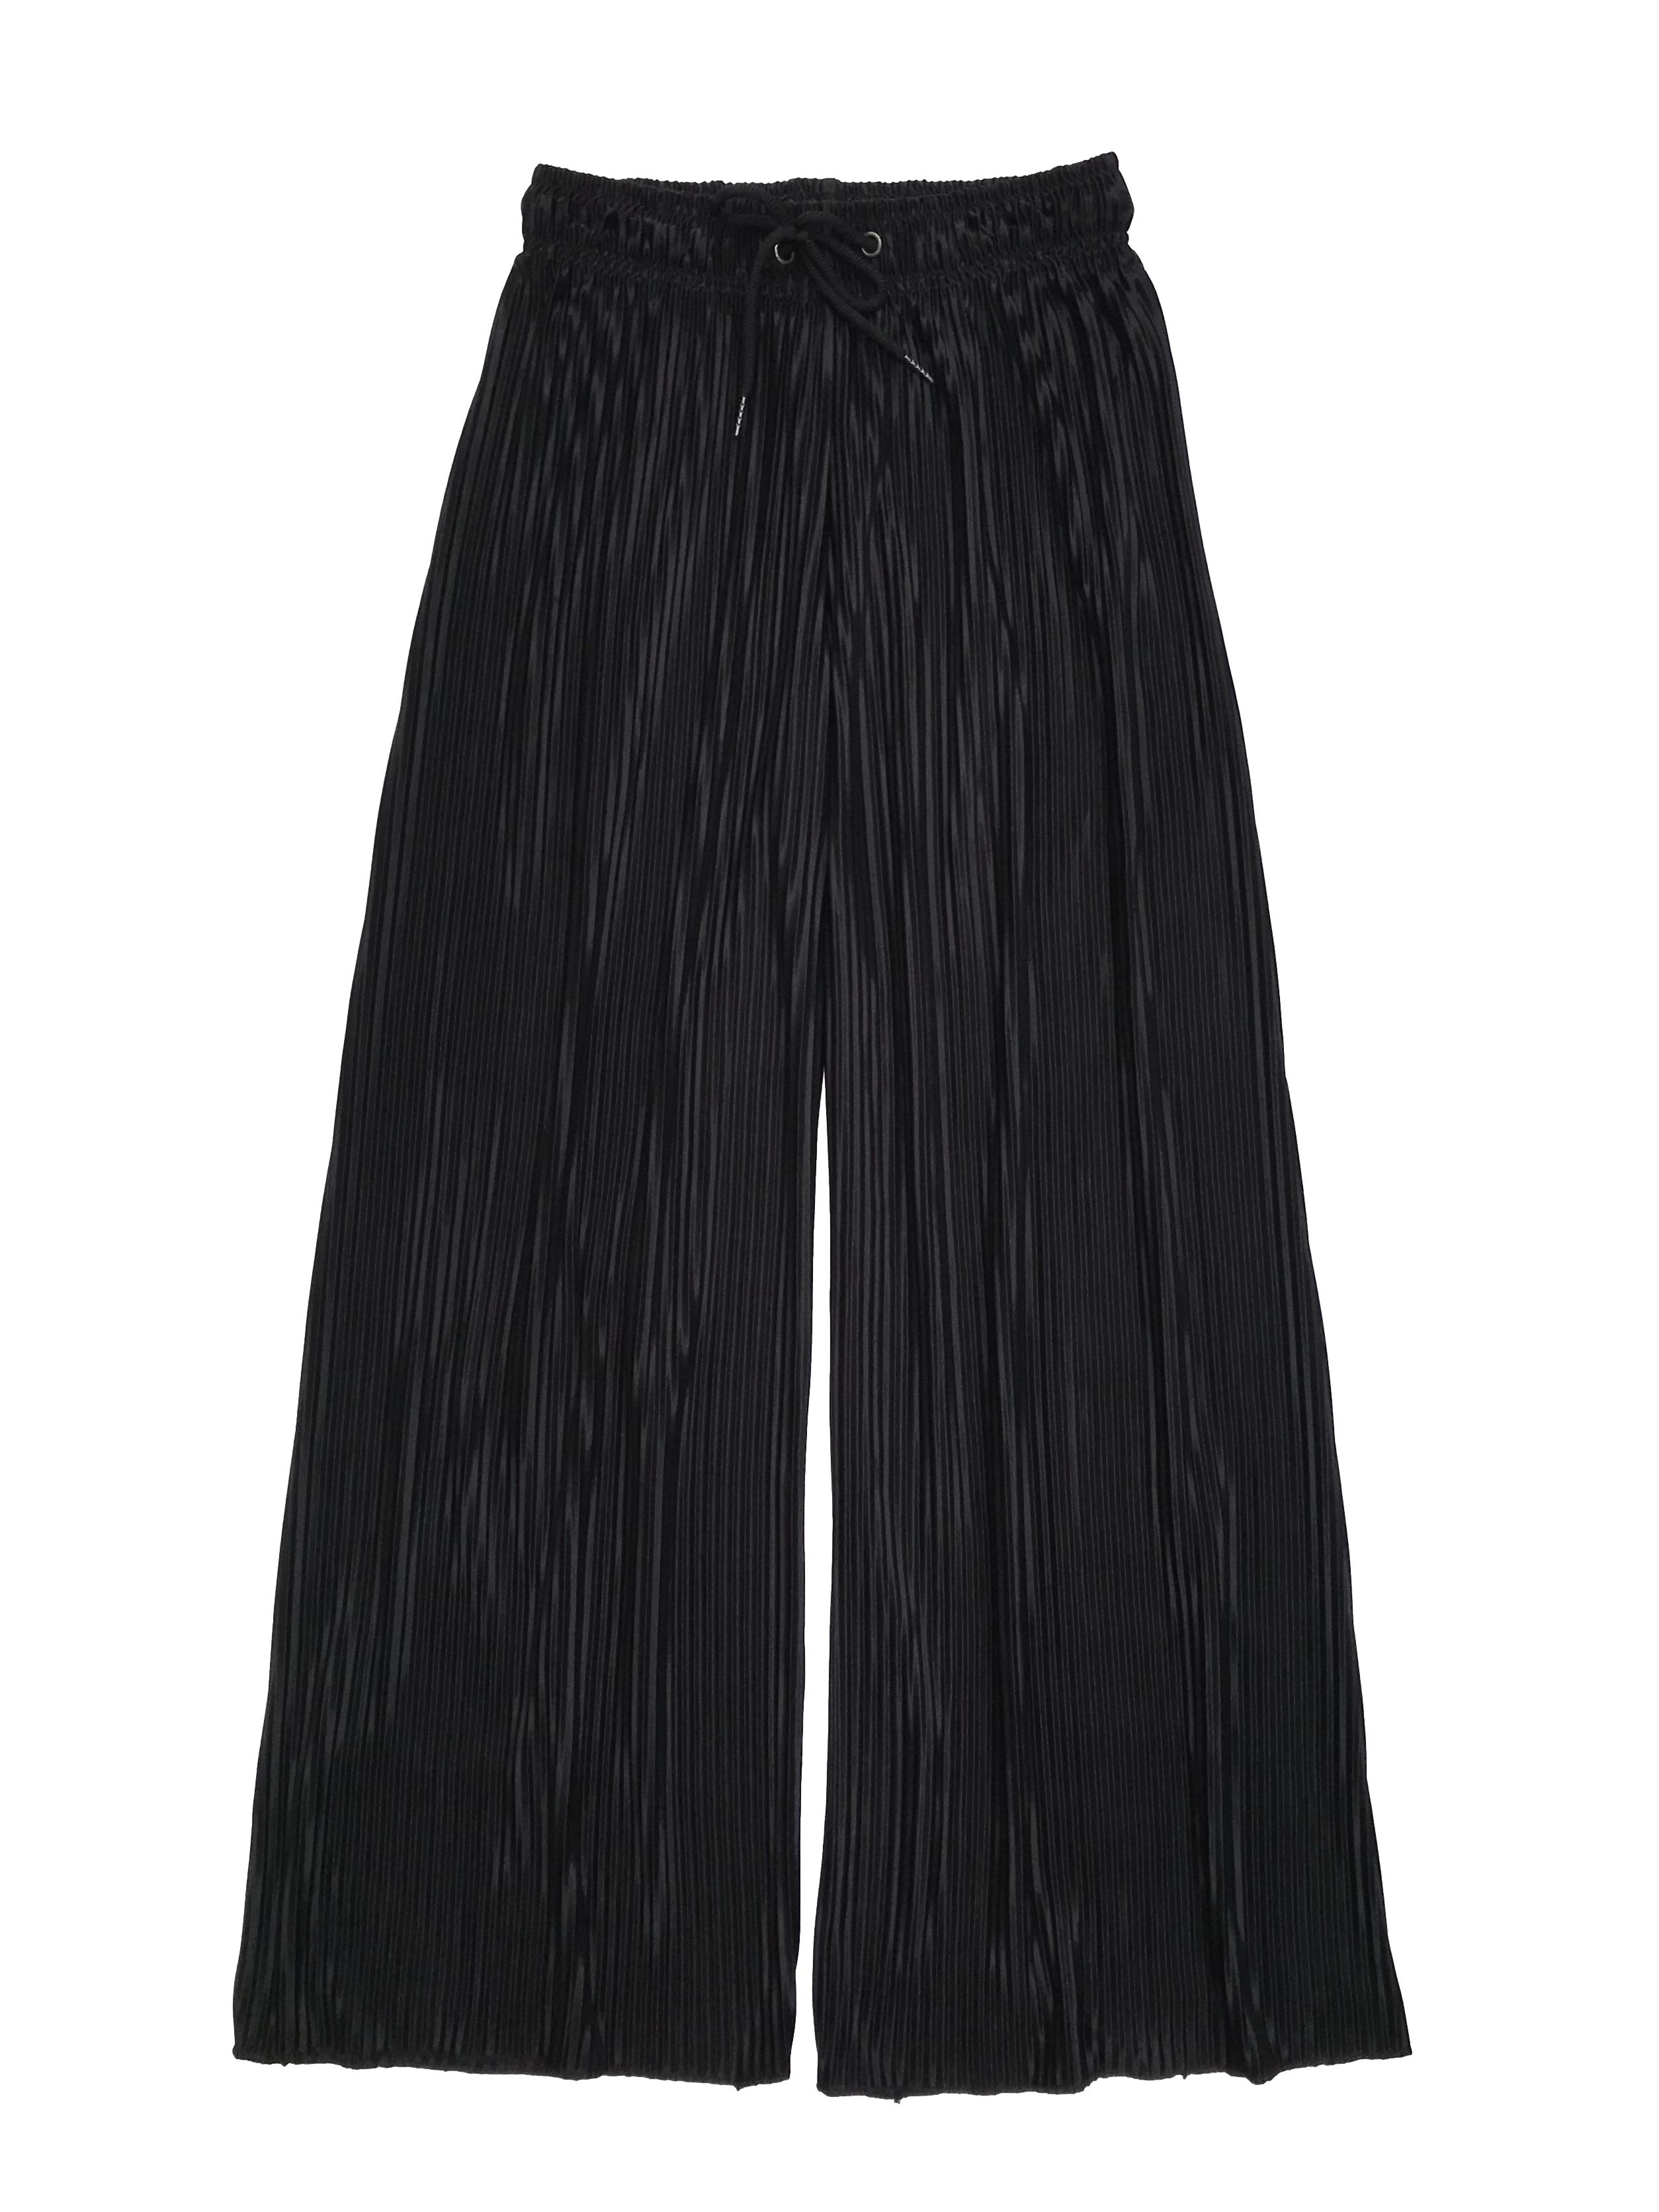 Pantalón negro satinado plisado, tela fluida, corte palazzo, pretina elástica y pasador. Cintura 68cm sin estirar Largo 97cm